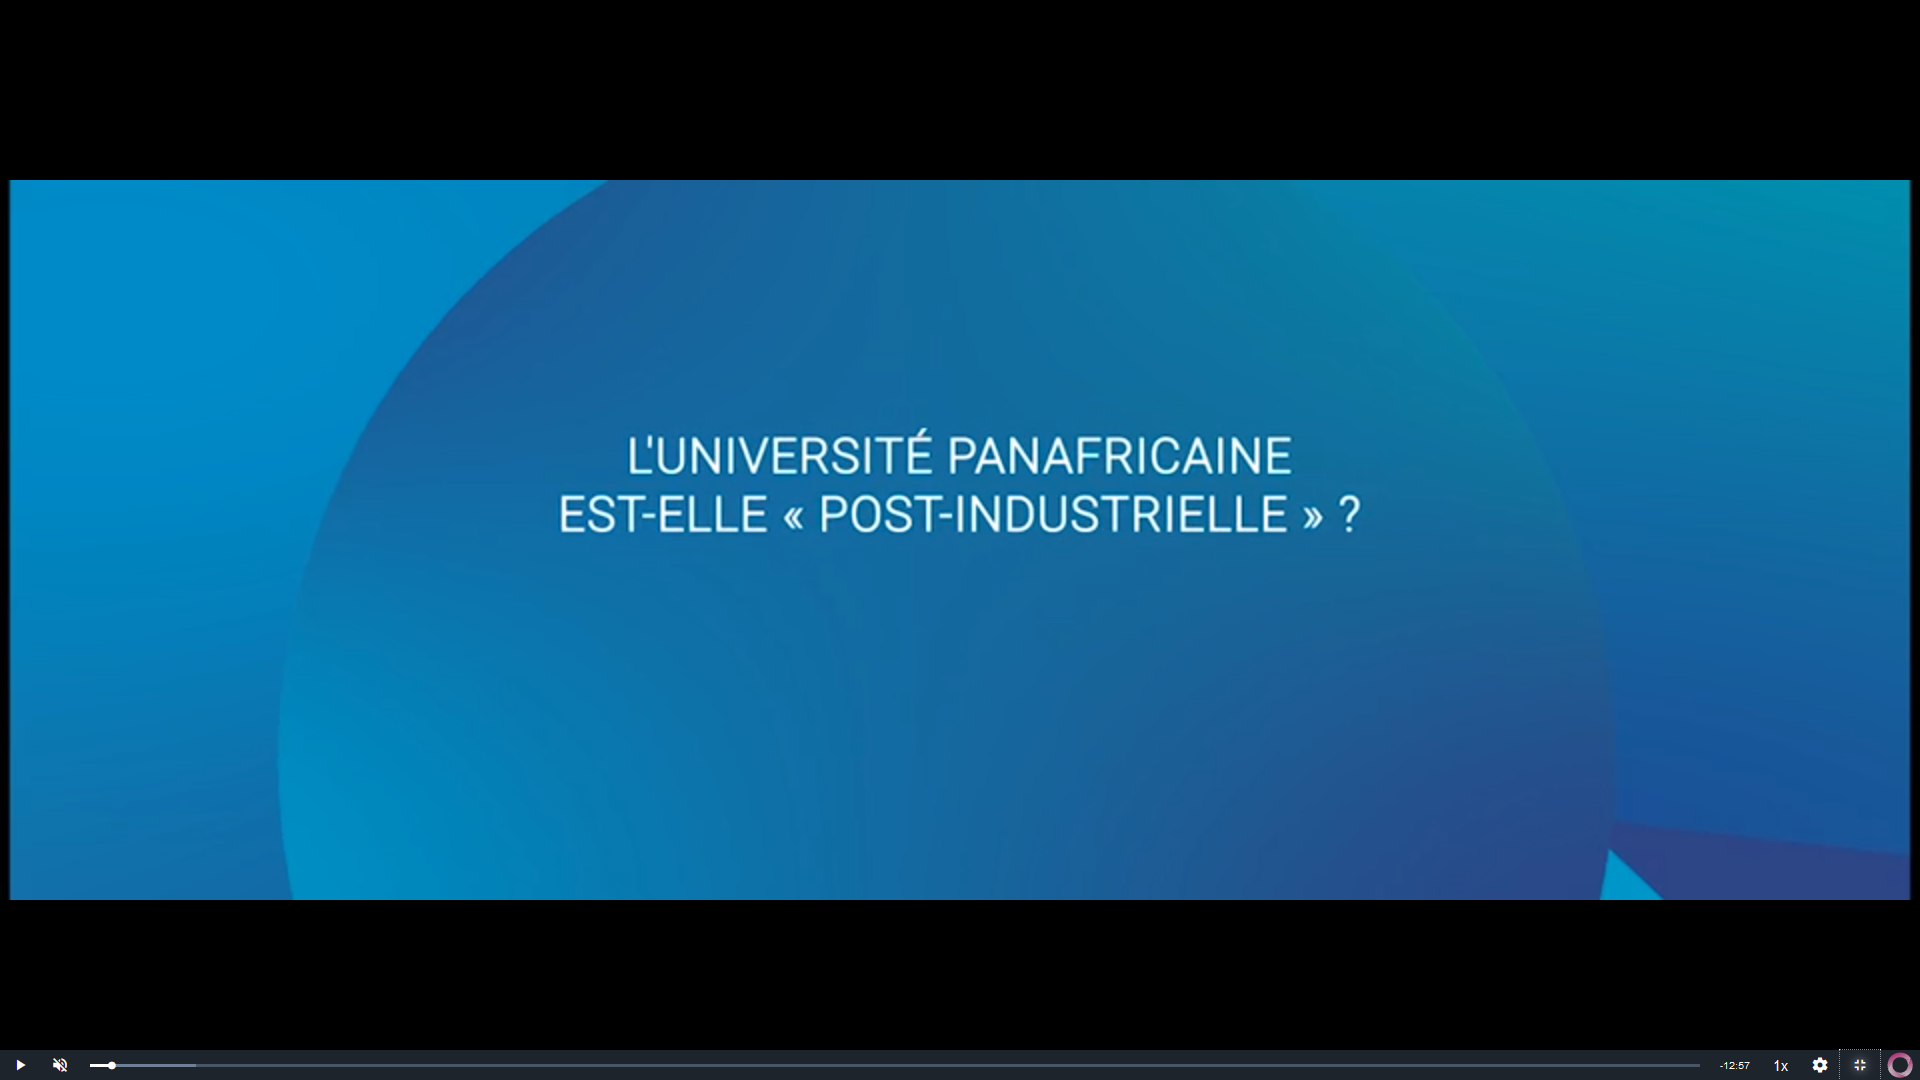 L'Université Panafricaine est-elle « post-industrielle » ?